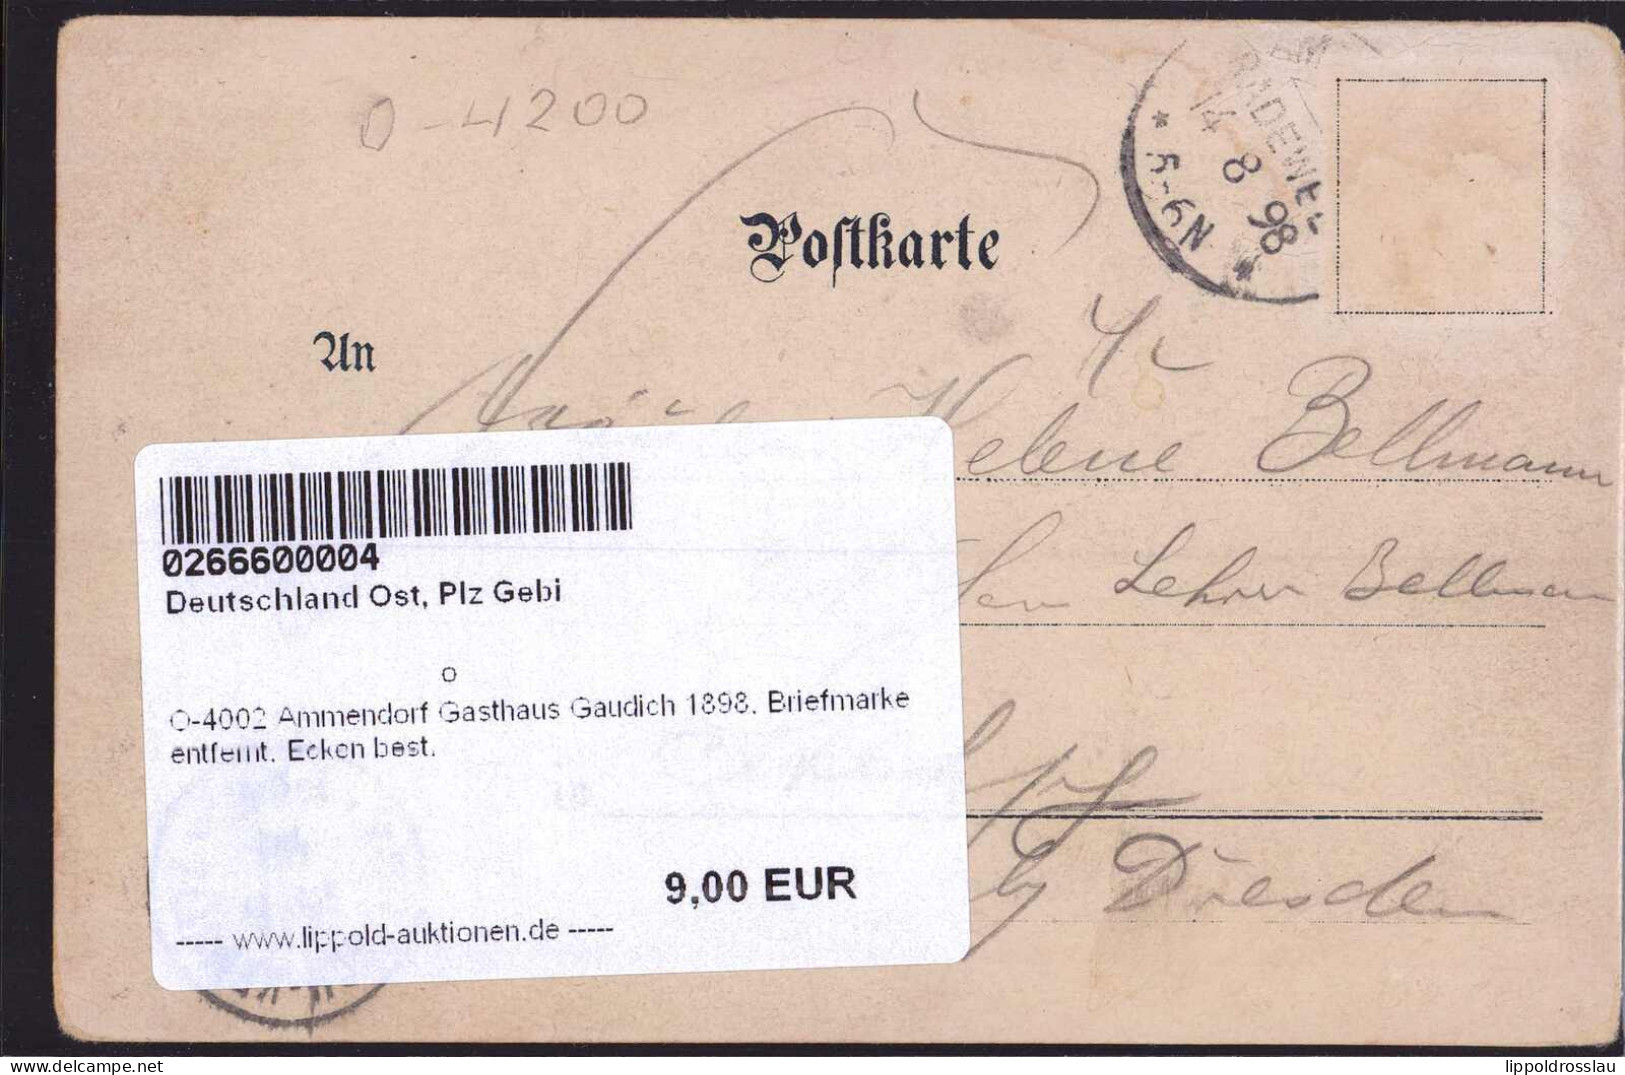 Gest. O-4002 Ammendorf Gasthaus Gaudich 1898, Briefmarke Entfernt, Ecken Best. - Halle (Saale)